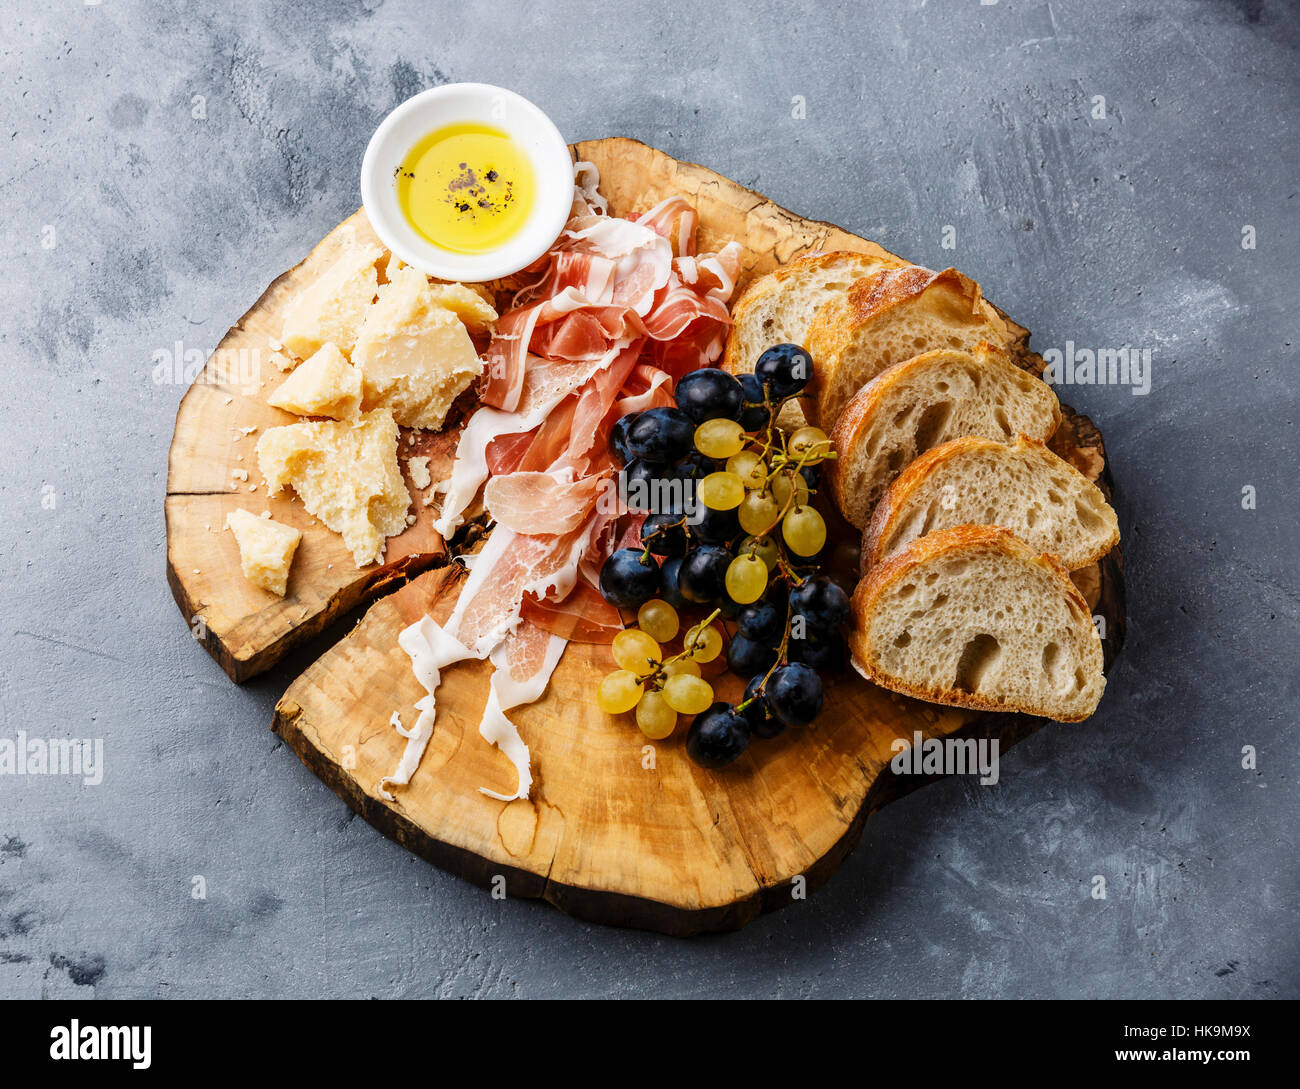 La plaque d'entrée avec le prosciutto, fromage parmesan et du pain sur planche de bois sur fond de béton gris Banque D'Images